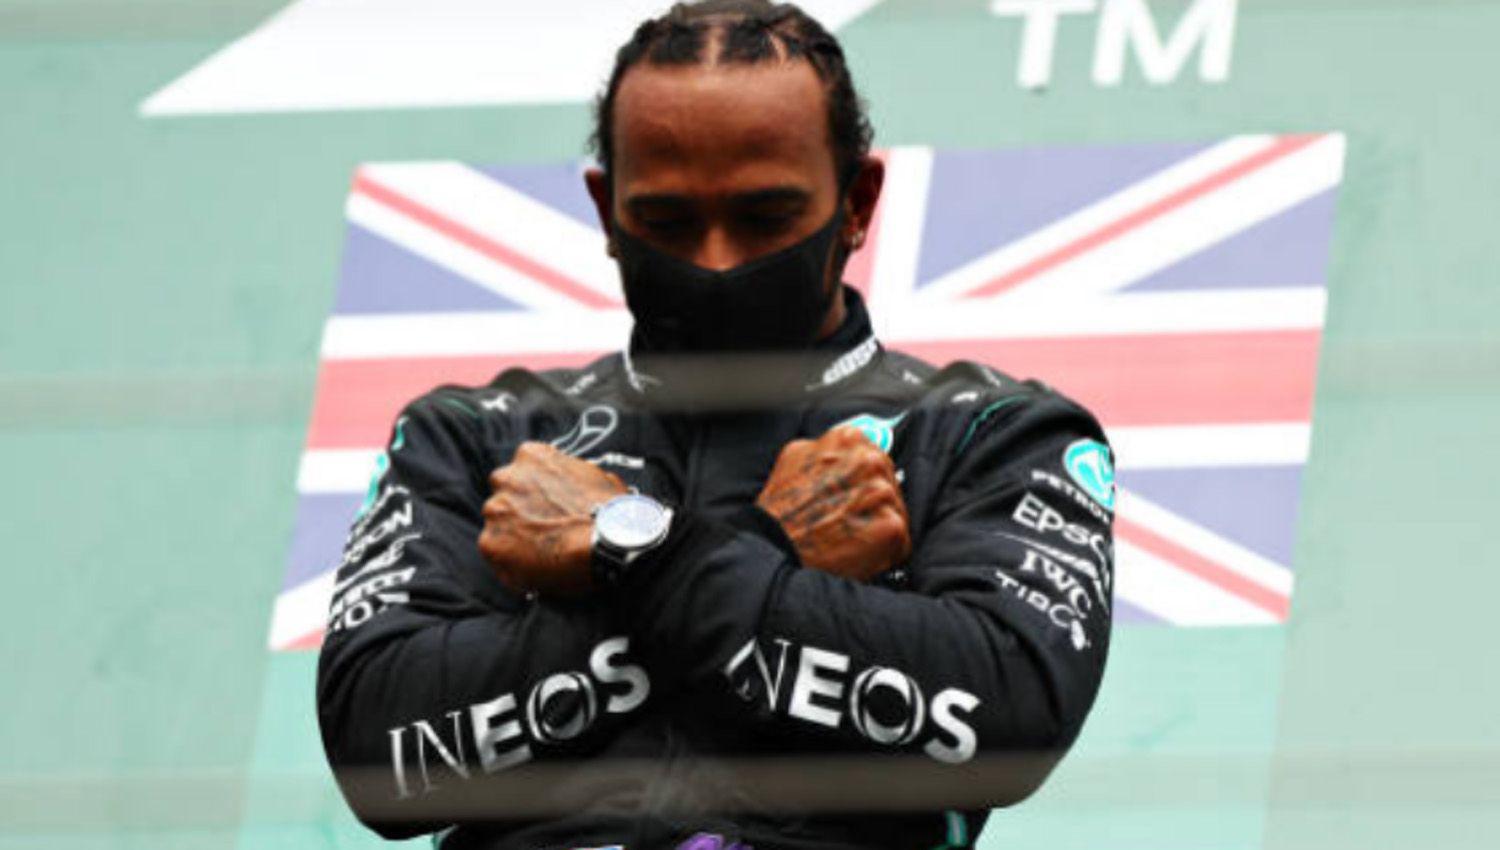 Foacutermula 1- Lewis Hamilton se alzoacute con la victoria en el Gran Premio de Beacutelgica